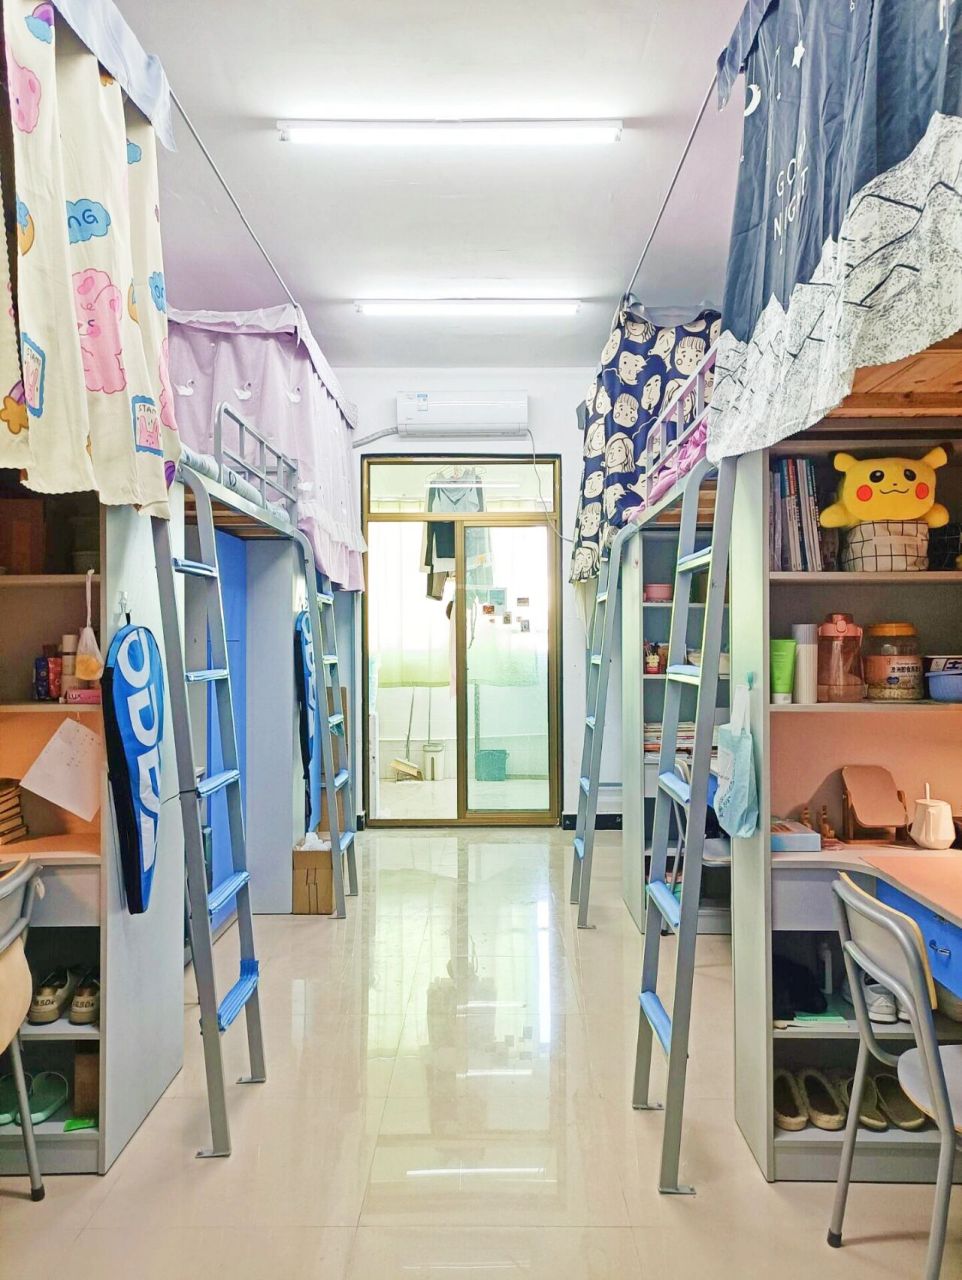 郑州财经学院寝室图片图片